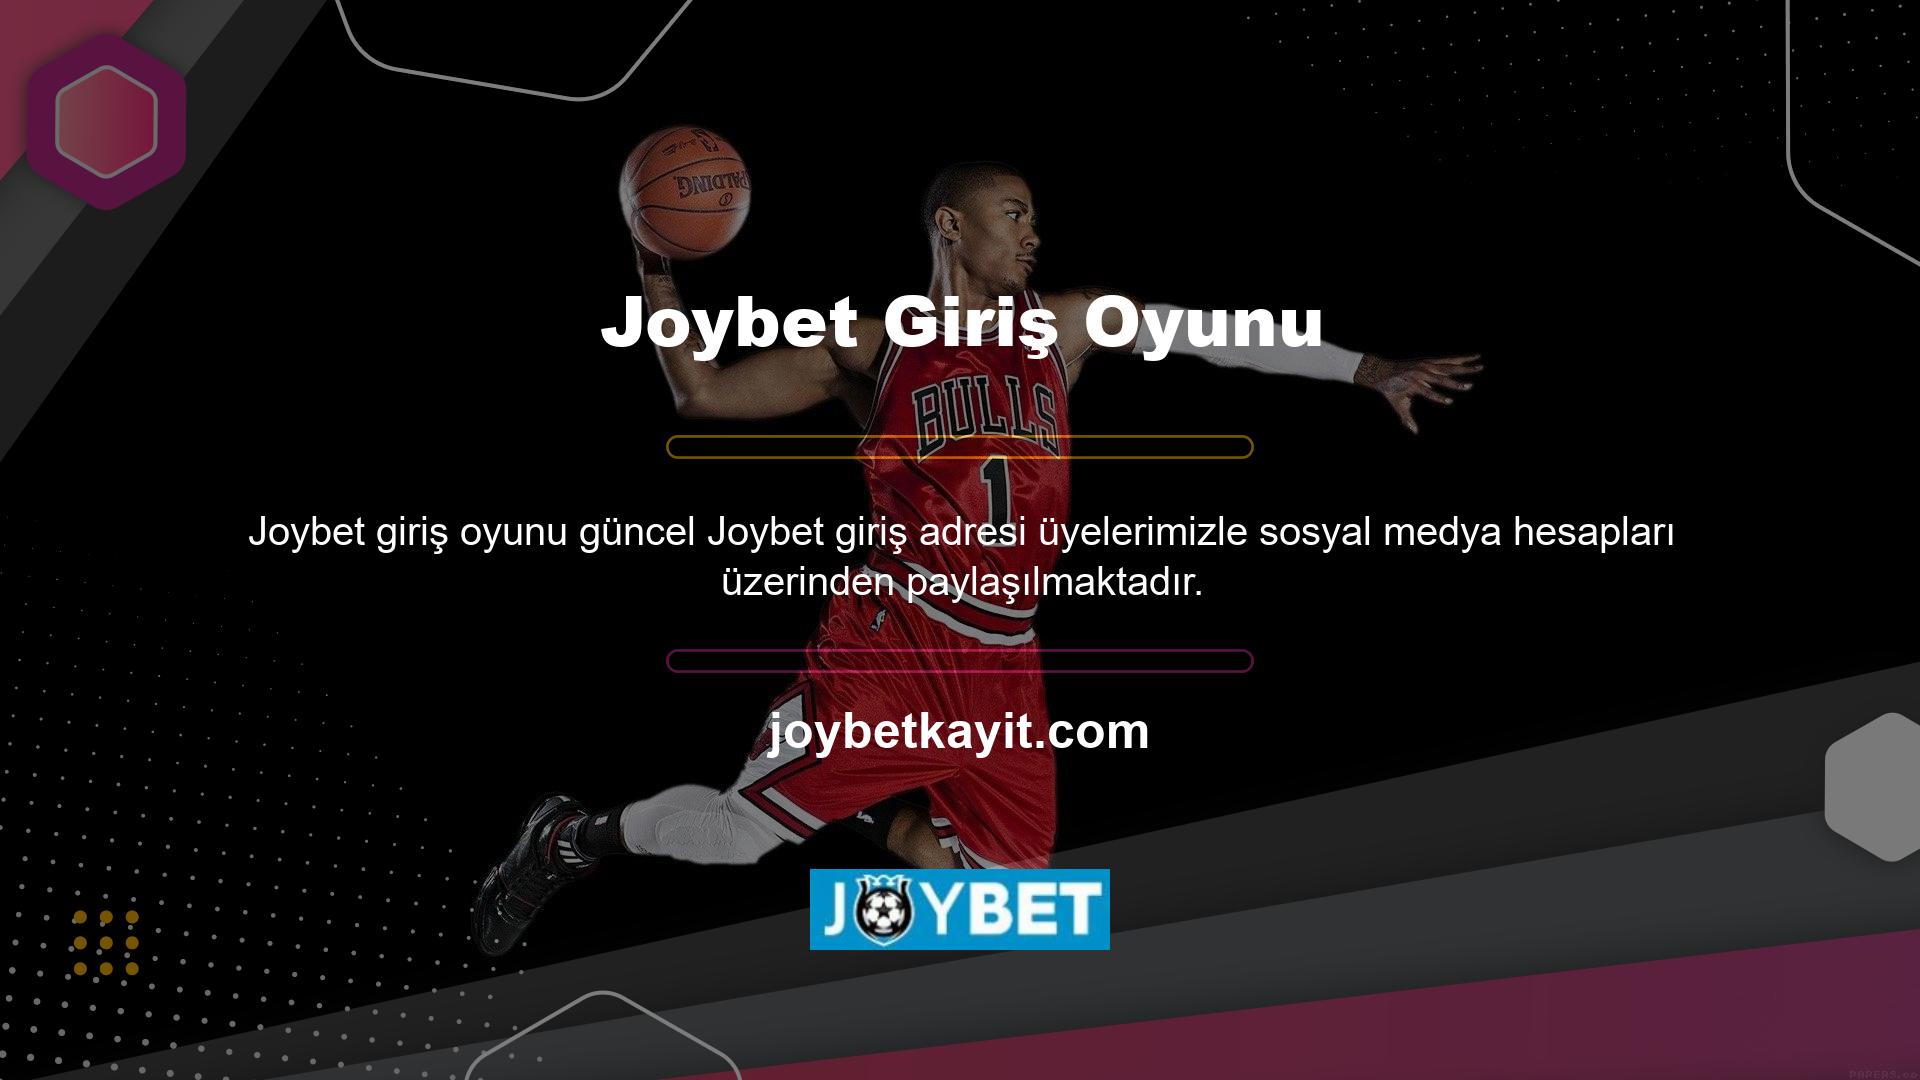 Joybet internet sitesi yerel oyuncular tarafından en çok ziyaret edilen platformlardan biri ancak yasa dışı hizmetler nedeniyle BTK tarafından sıklıkla engelleniyor